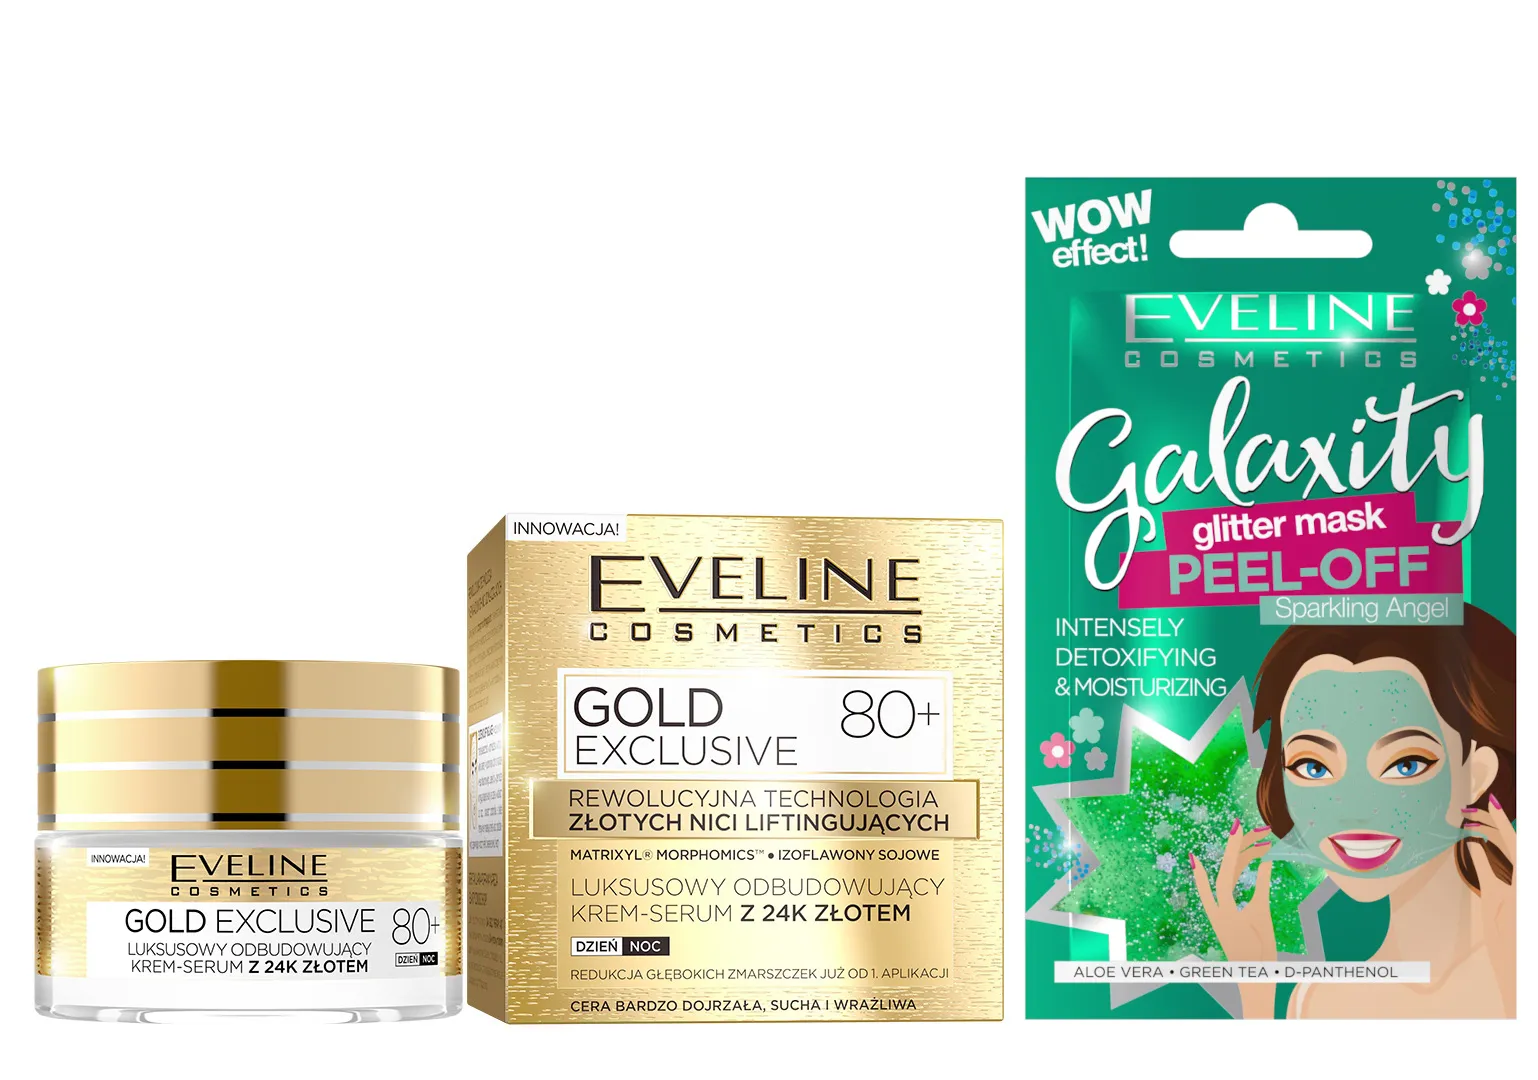 Eveline Cosmetics Gold Exclusive luksusowy odbudowujący krem-serum z 24K złotem 80+, 50 ml + Eveline Cosmetics Detoksykująco-nawilżająca maseczka peel-off z połyskującymi drobinkami, 10 ml